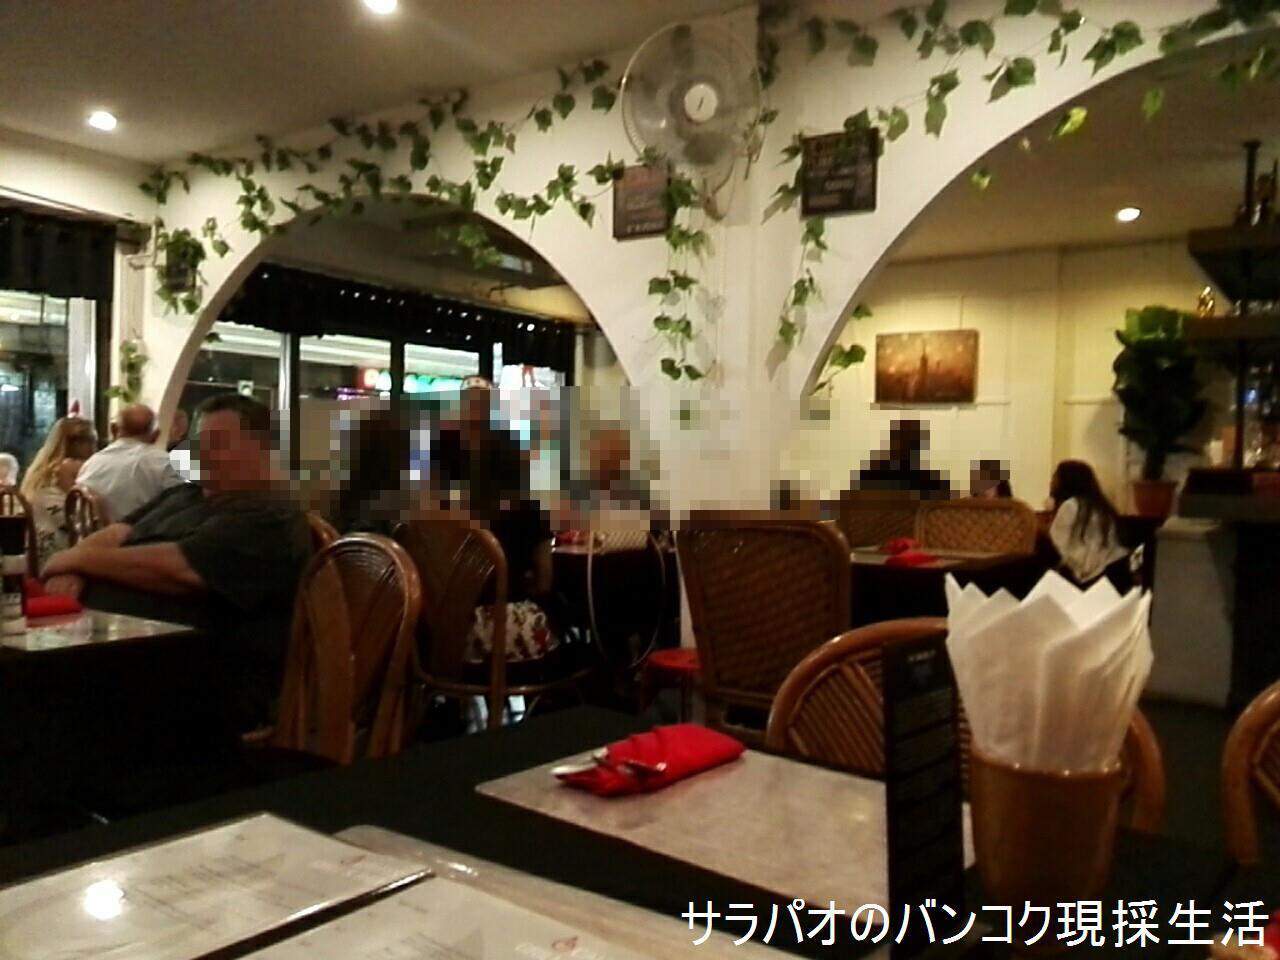 RestaurantChonBuri1_03.jpg